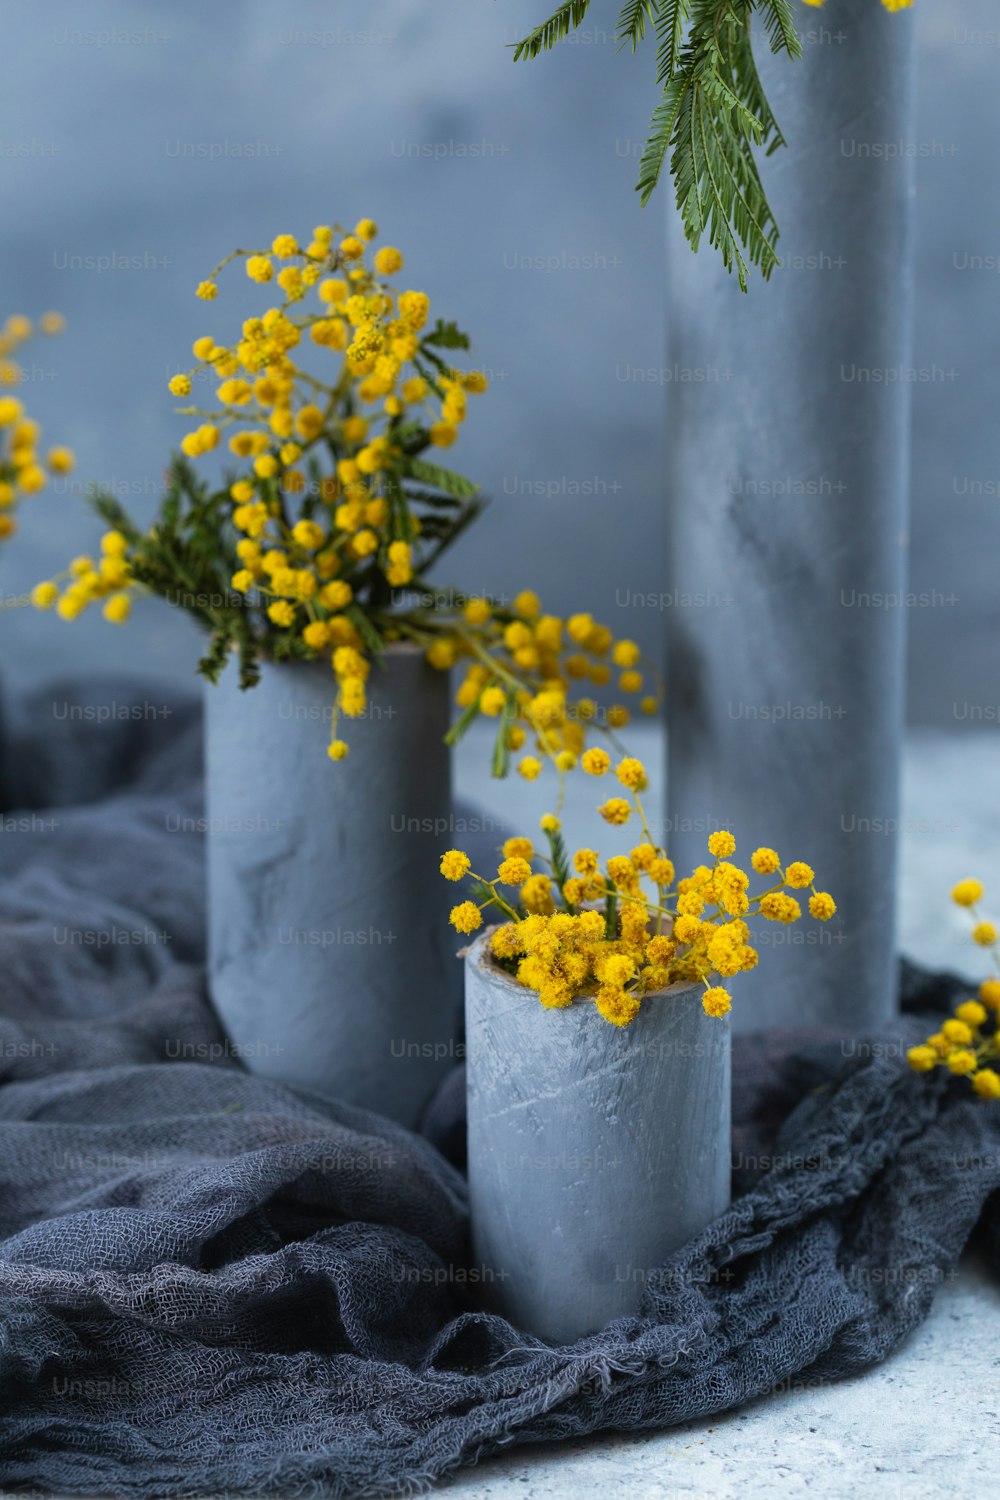 trois vases en ciment avec des fleurs jaunes